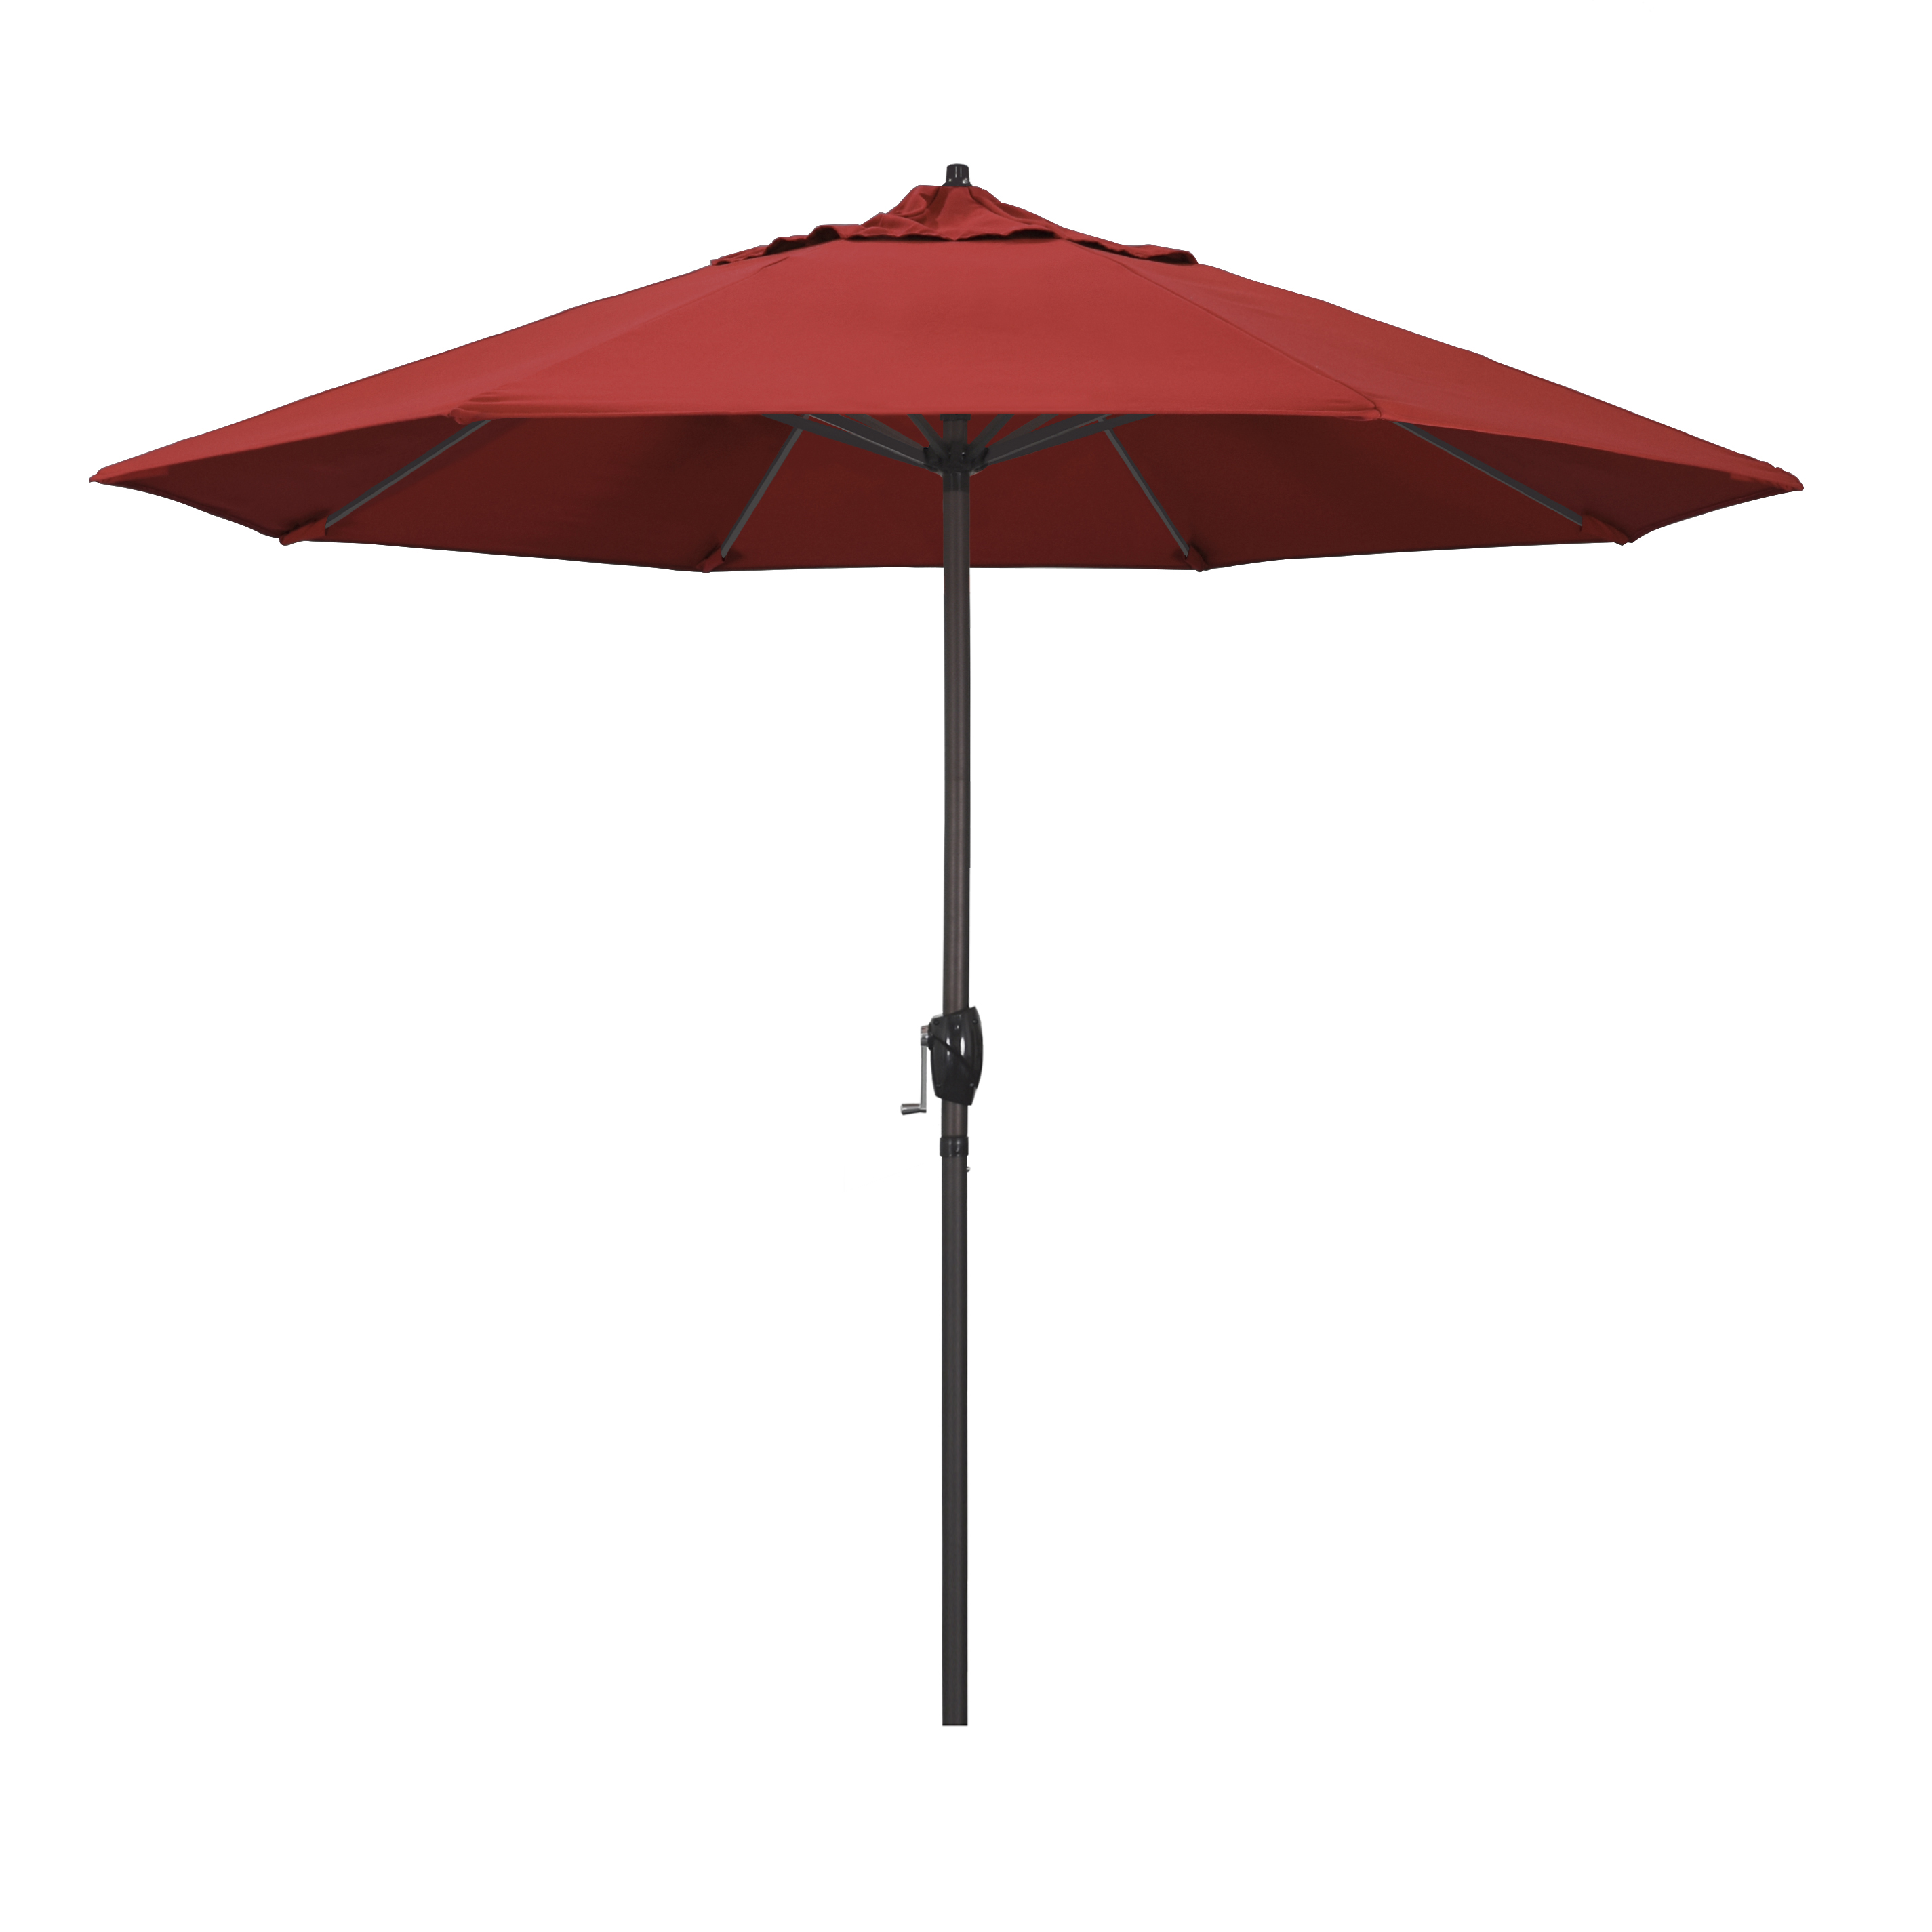 Ata908117-f13 9 Ft. Aluminum Market Umbrella Auto Tilt Crank Lift Bronze-olefin-red